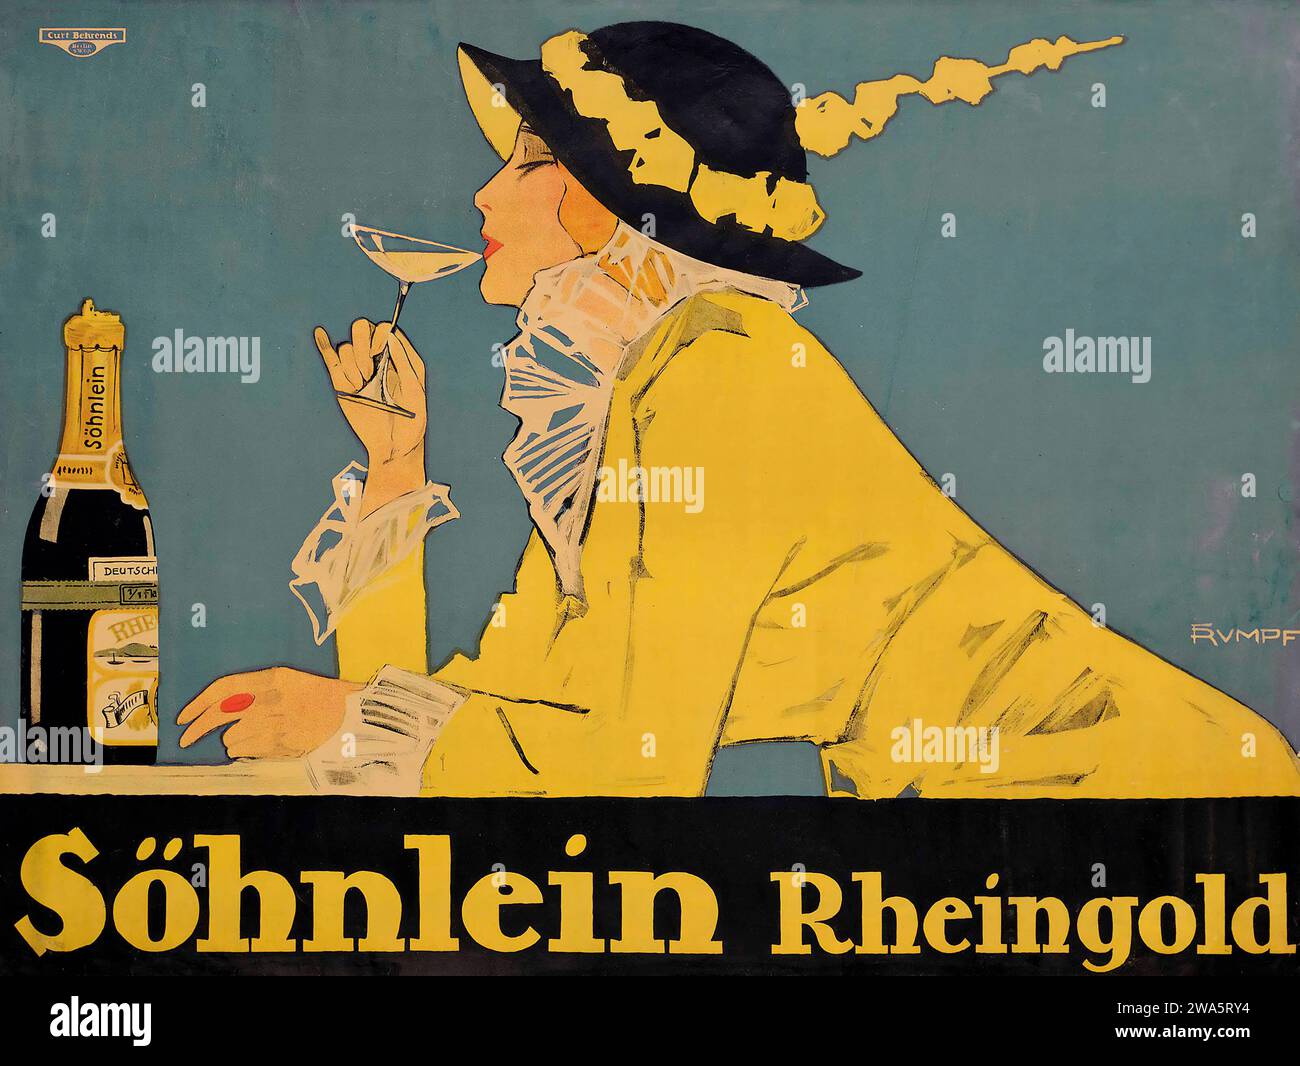 Fritz Carl G. Rumpf (1888-1949) SÖHNLEIN RHEINGOLD, publicité pour alcool vintage, 1914 Banque D'Images